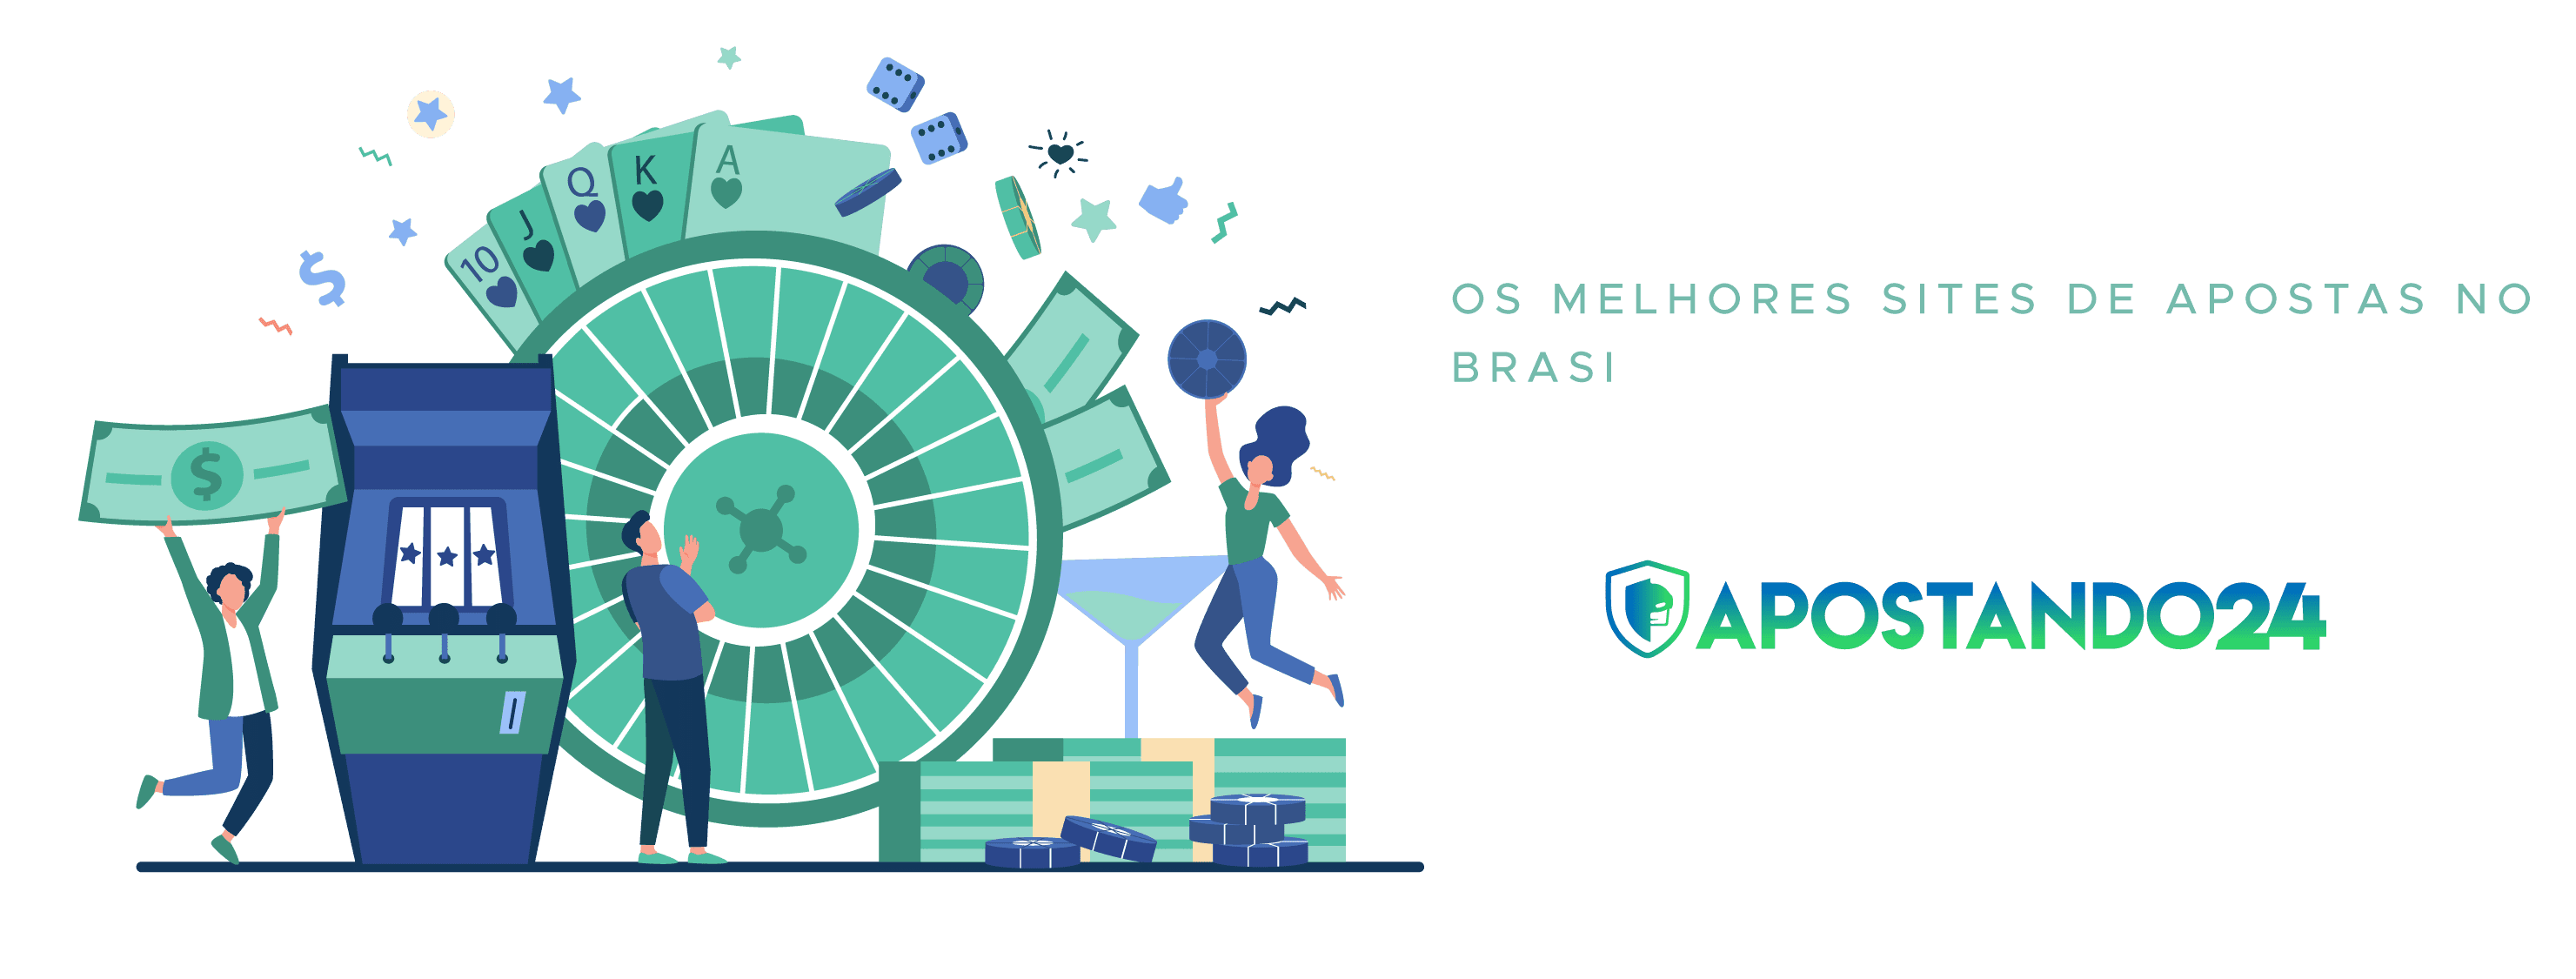 Os melhores sites de apostas no Brasil